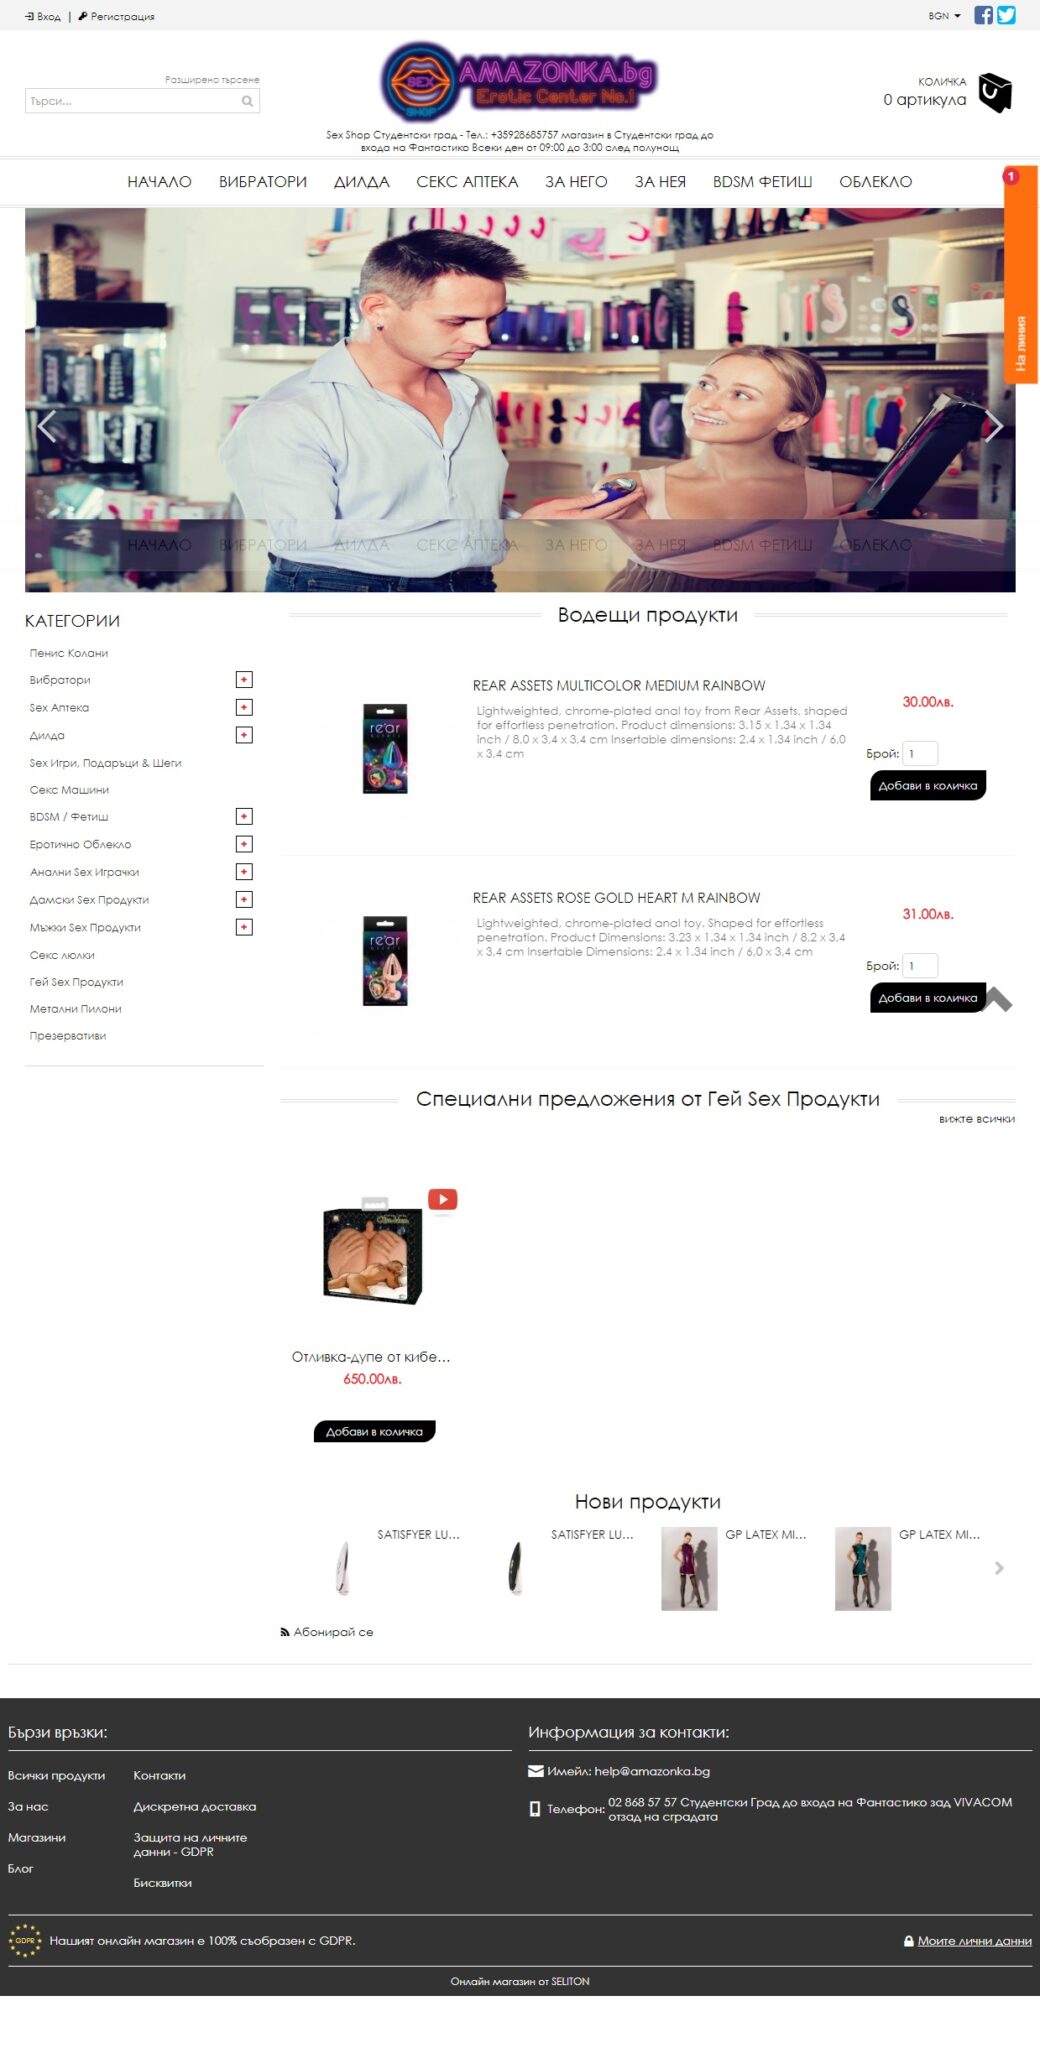 Amazonka.bg - Онлайн магазин за еротични продукти - SEO оптимизация, реклама, маркетинг